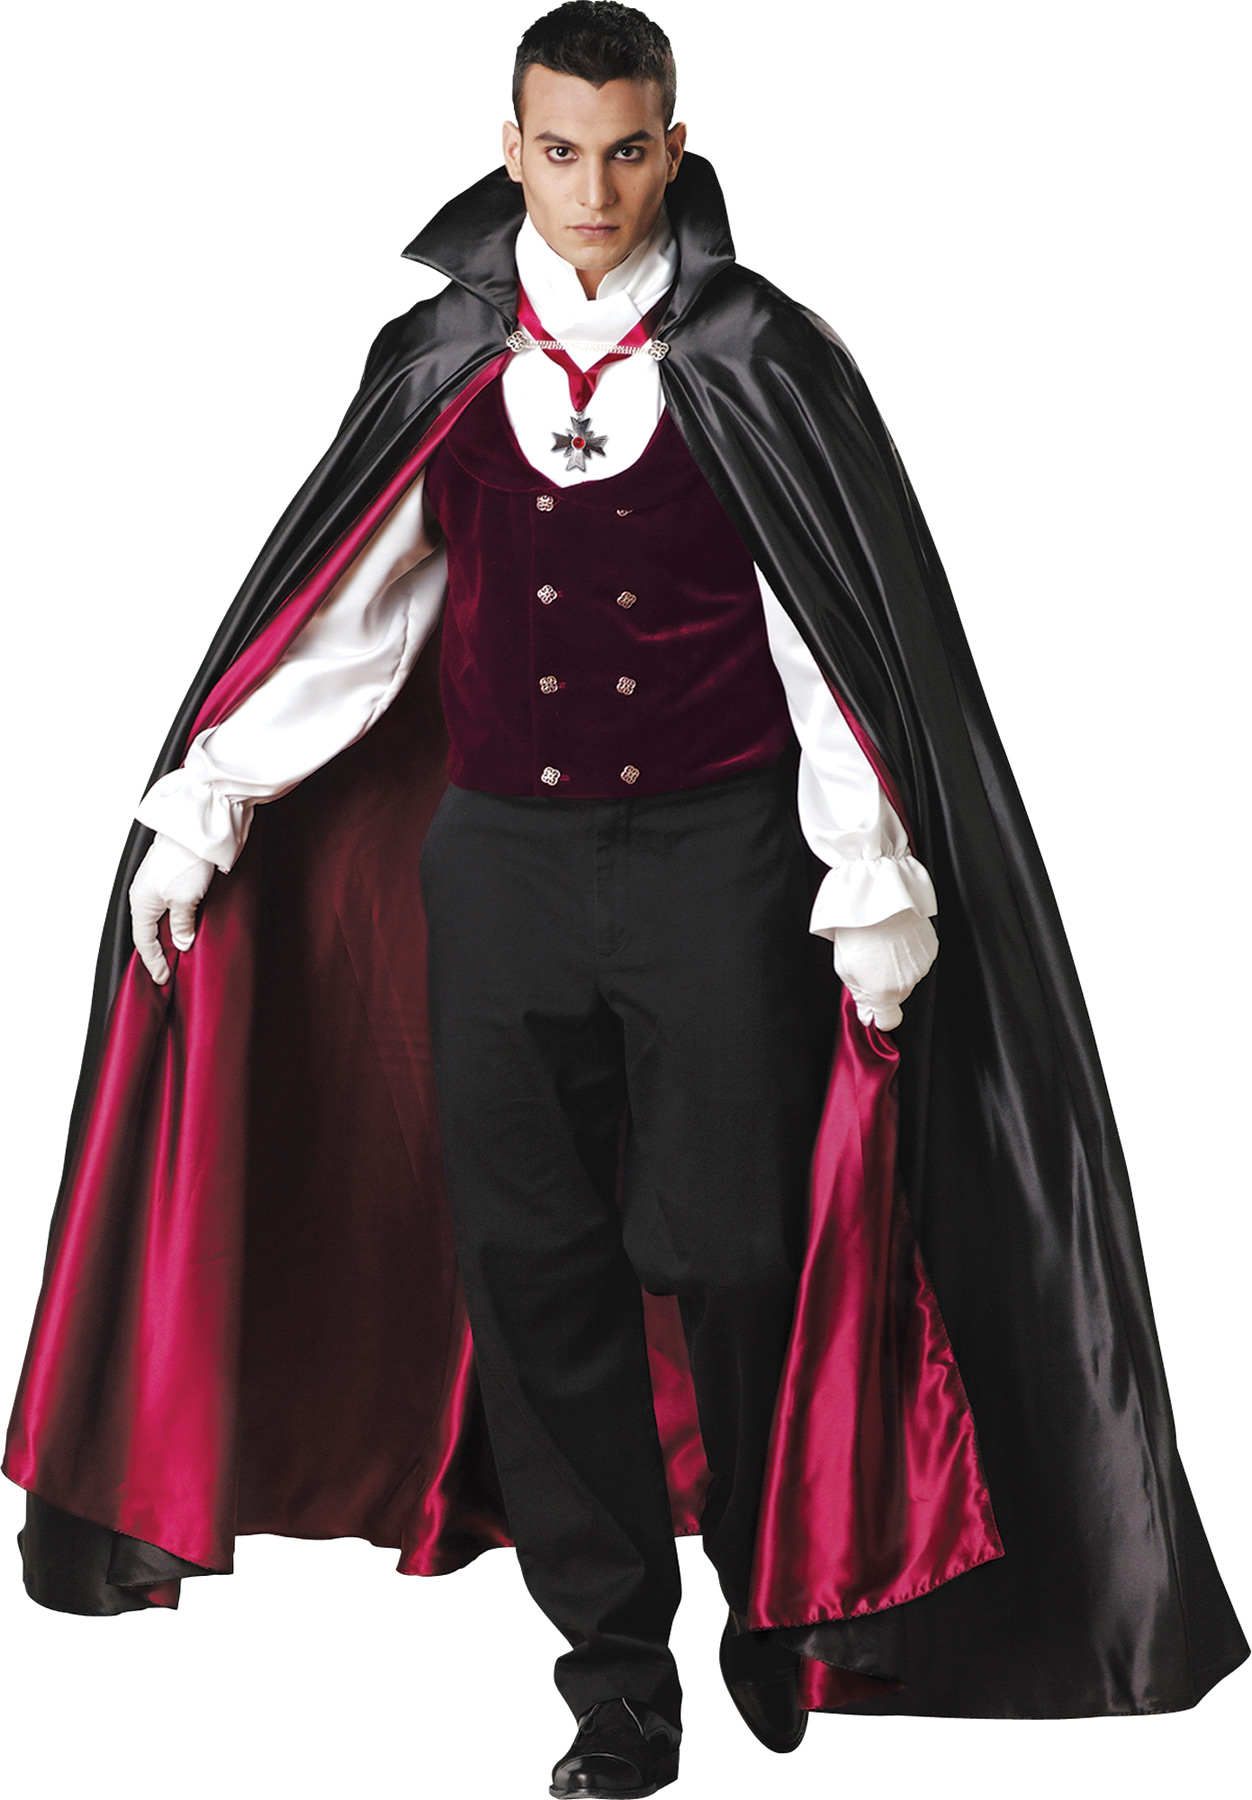 Men's Gothic Classic Vampire Costume